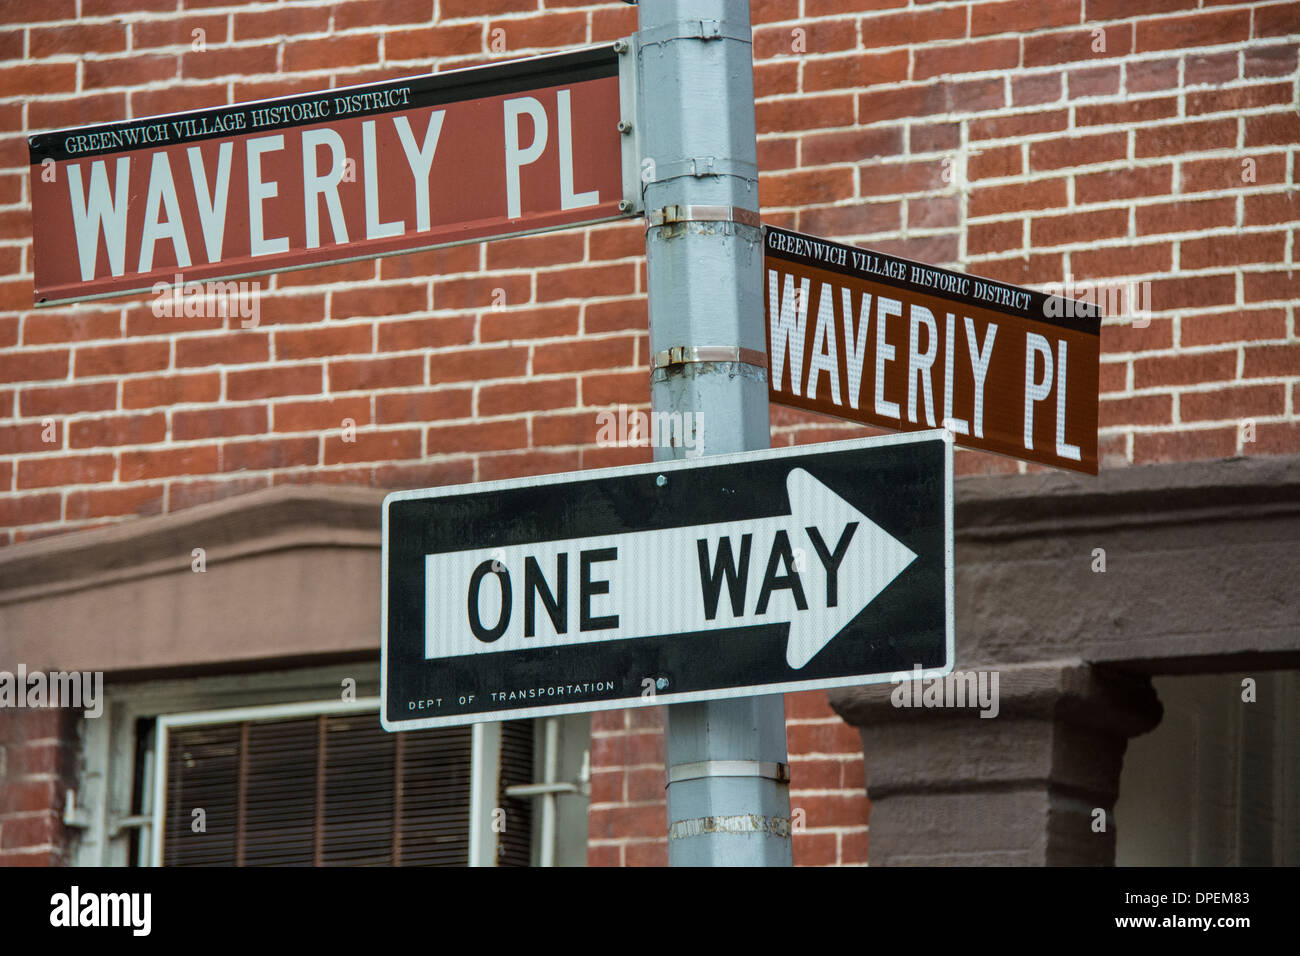 Les plaques de rue et un signe ainsi à l'angle de Waverly Place et Waverly Place à Greenwich Village, New York City, USA Banque D'Images